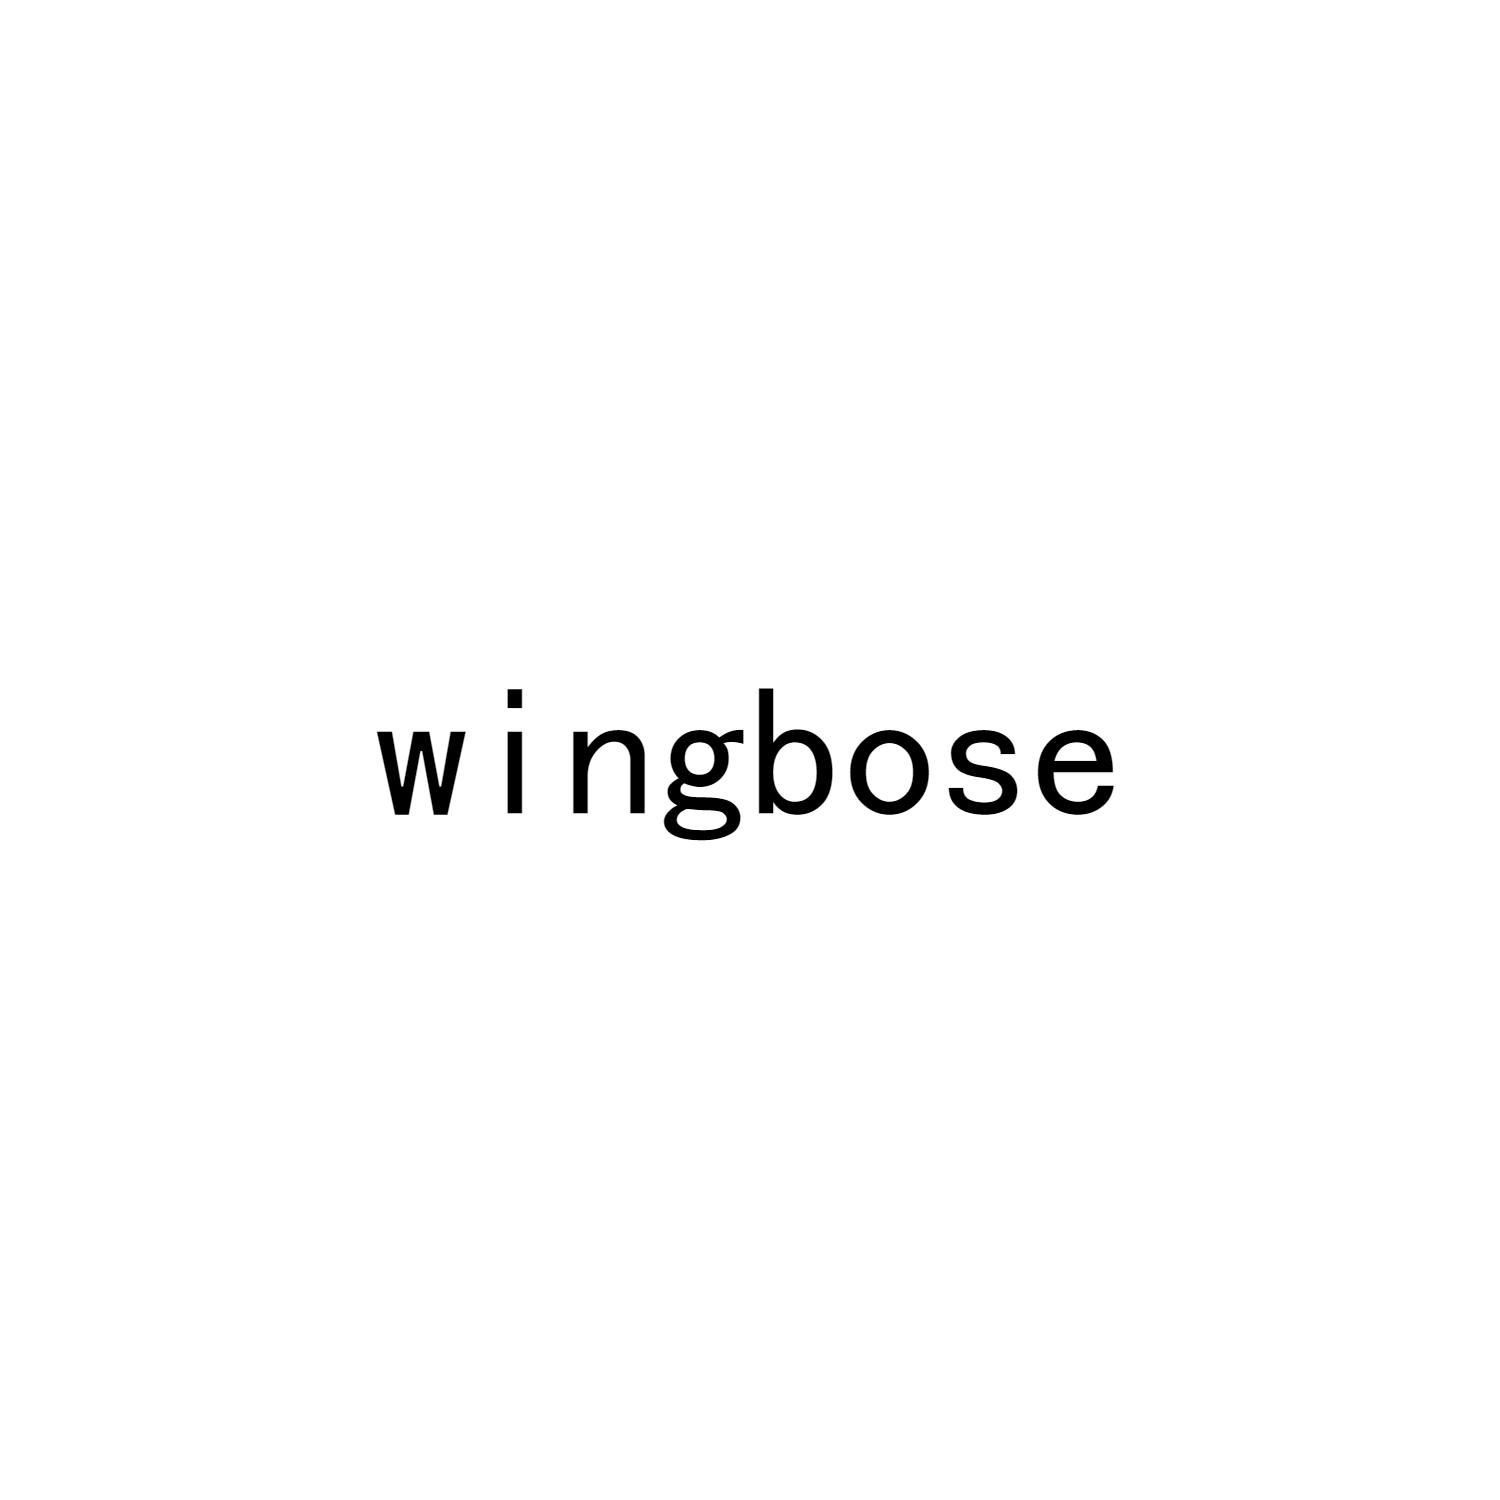 WINGBOSE